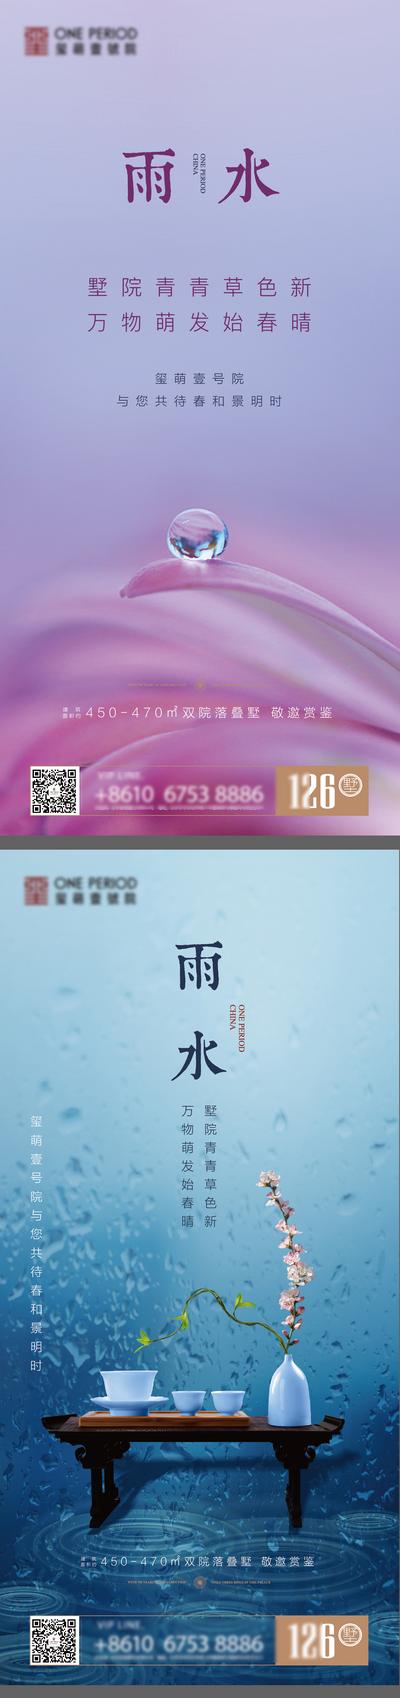 南门网 海报 二十四节气 房地产 雨水 水滴 茶几 中式 系列